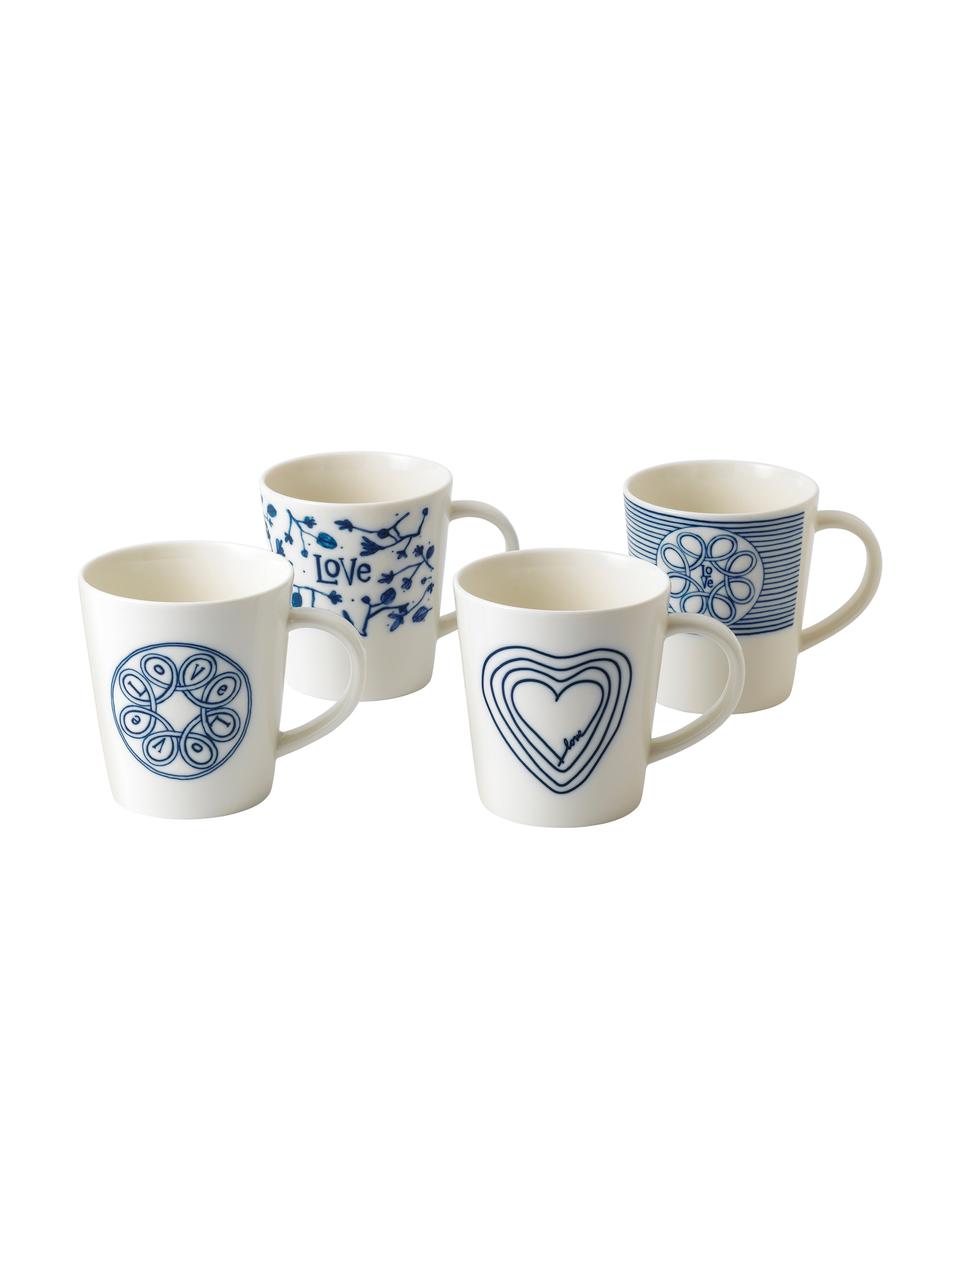 Gemusterte Tassen Love in Weiß/Blau, 4er-Set, Porzellan, Elfenbein, Kobaltblau, Ø 10 x H 11 cm